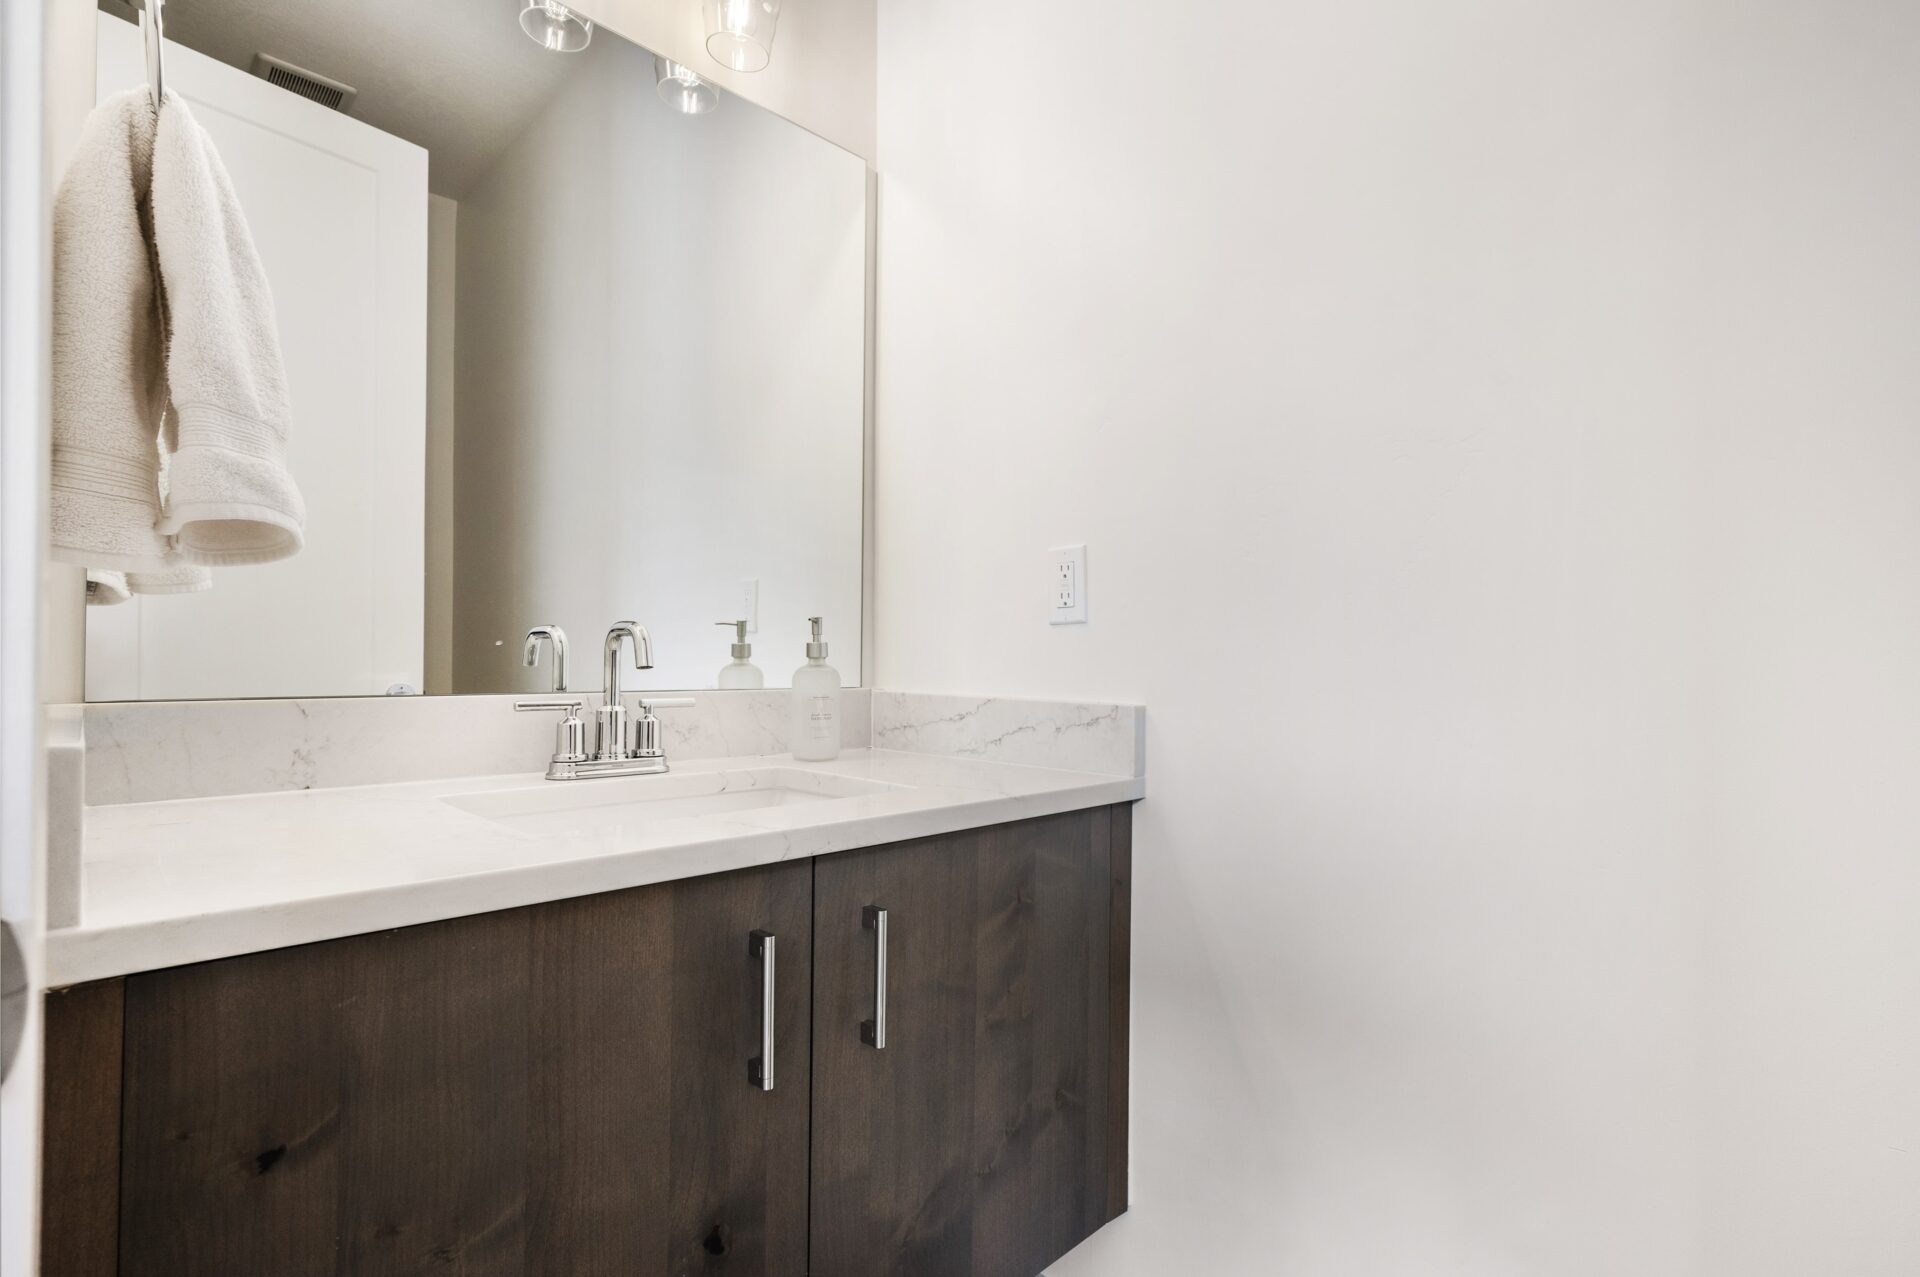 Custom bathroom vanity cabinets in a luxury Utah home